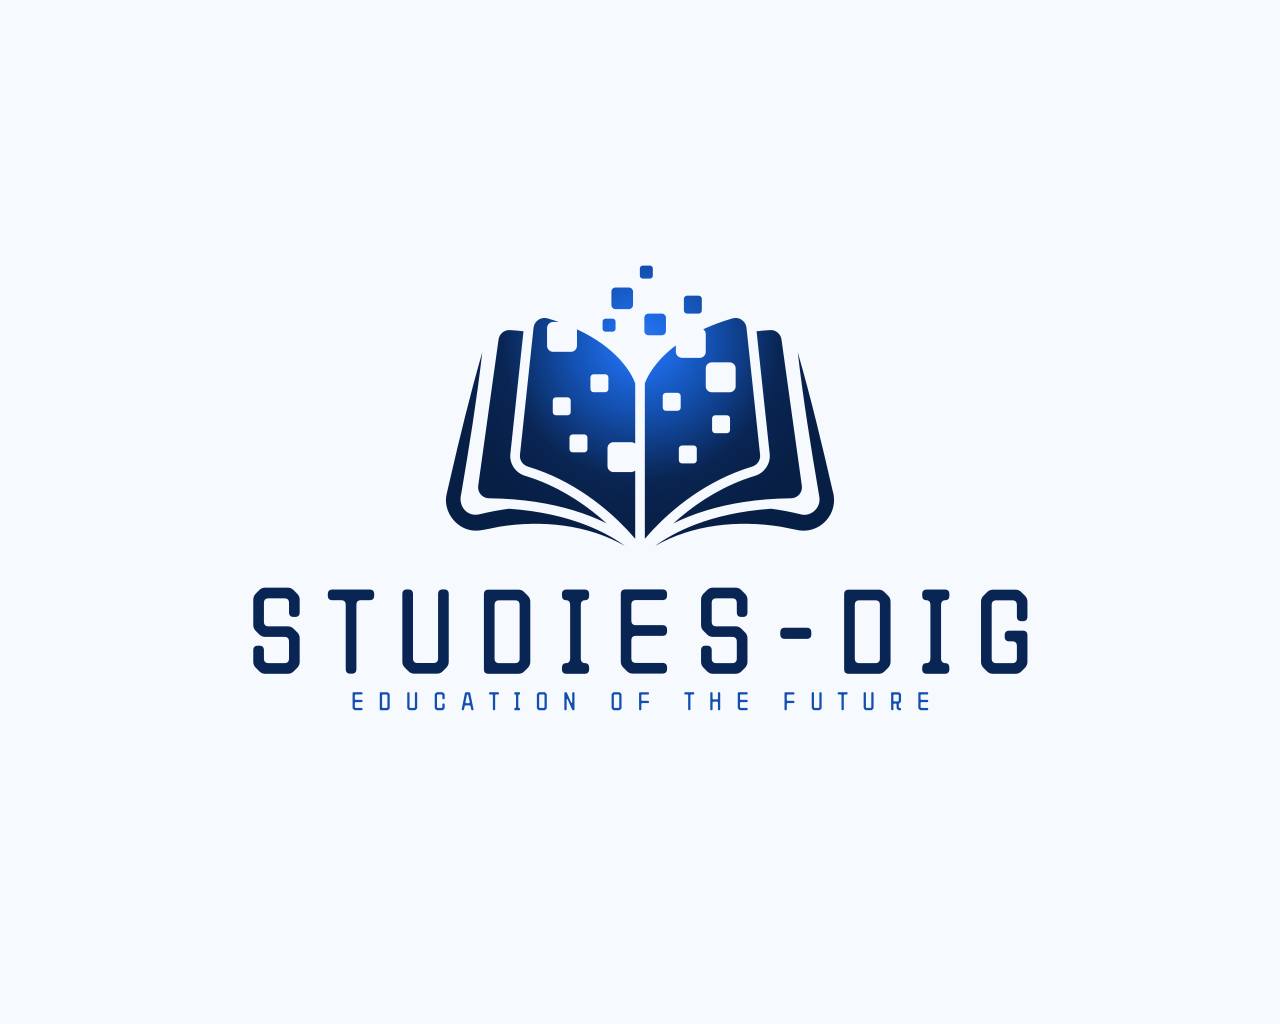 STUDIES-DIG